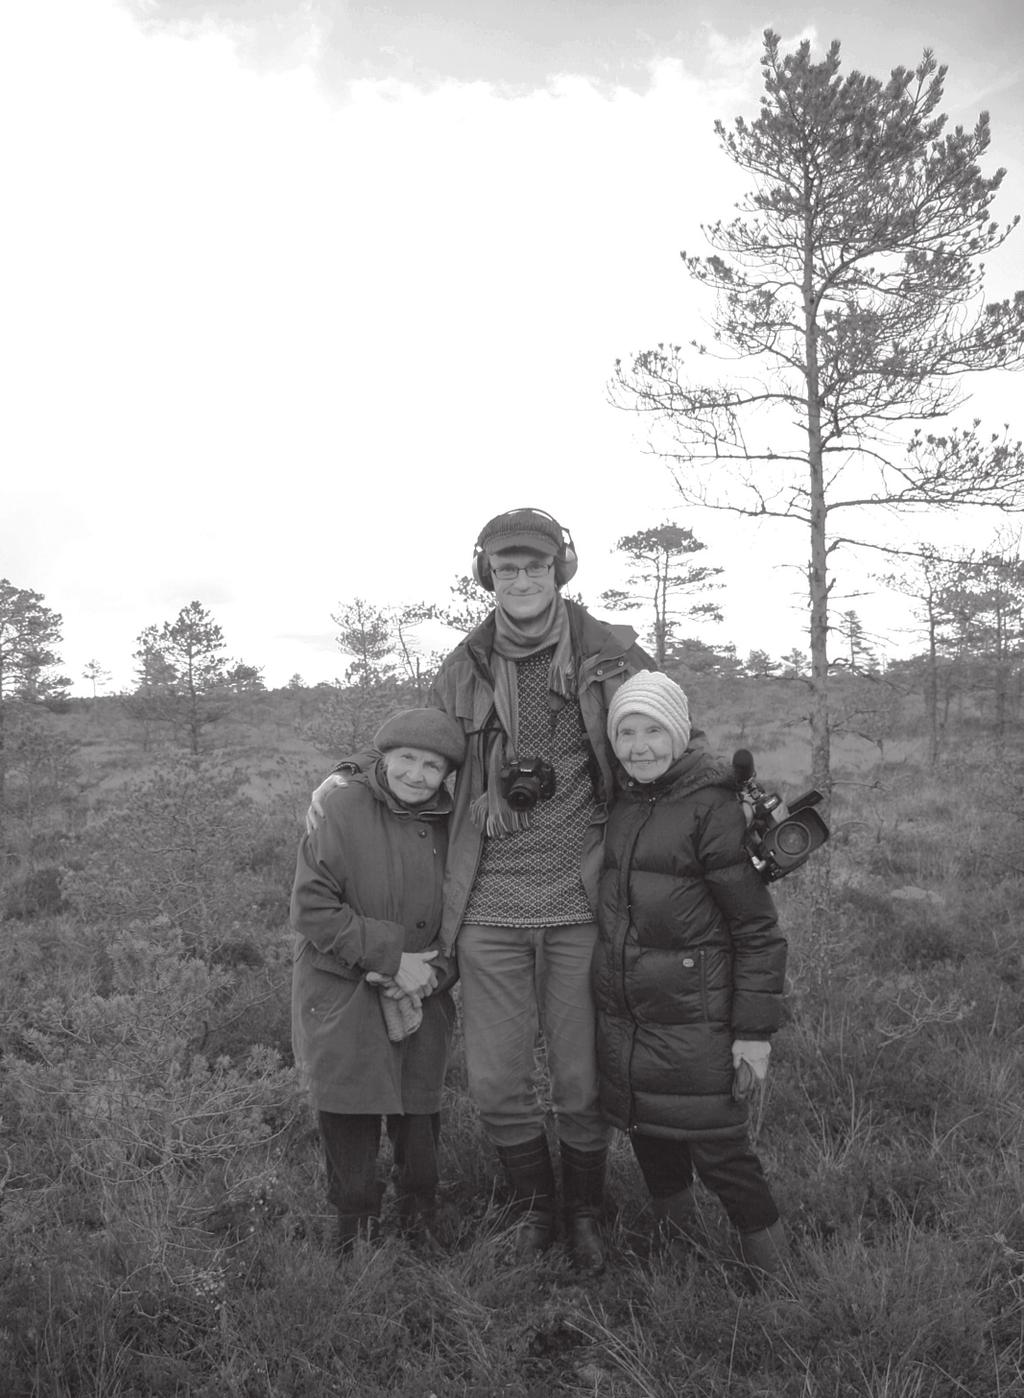 Heldi Ausmees, Jüri Metssalu ja Salme Eenlo välitöödel Juuru raba pärimuspaikades oktoobris 2009. Pille Vahtmäe foto. ka pärimuspaiku, lisaks fotografeeriti informante ja kogumissituatsioone.